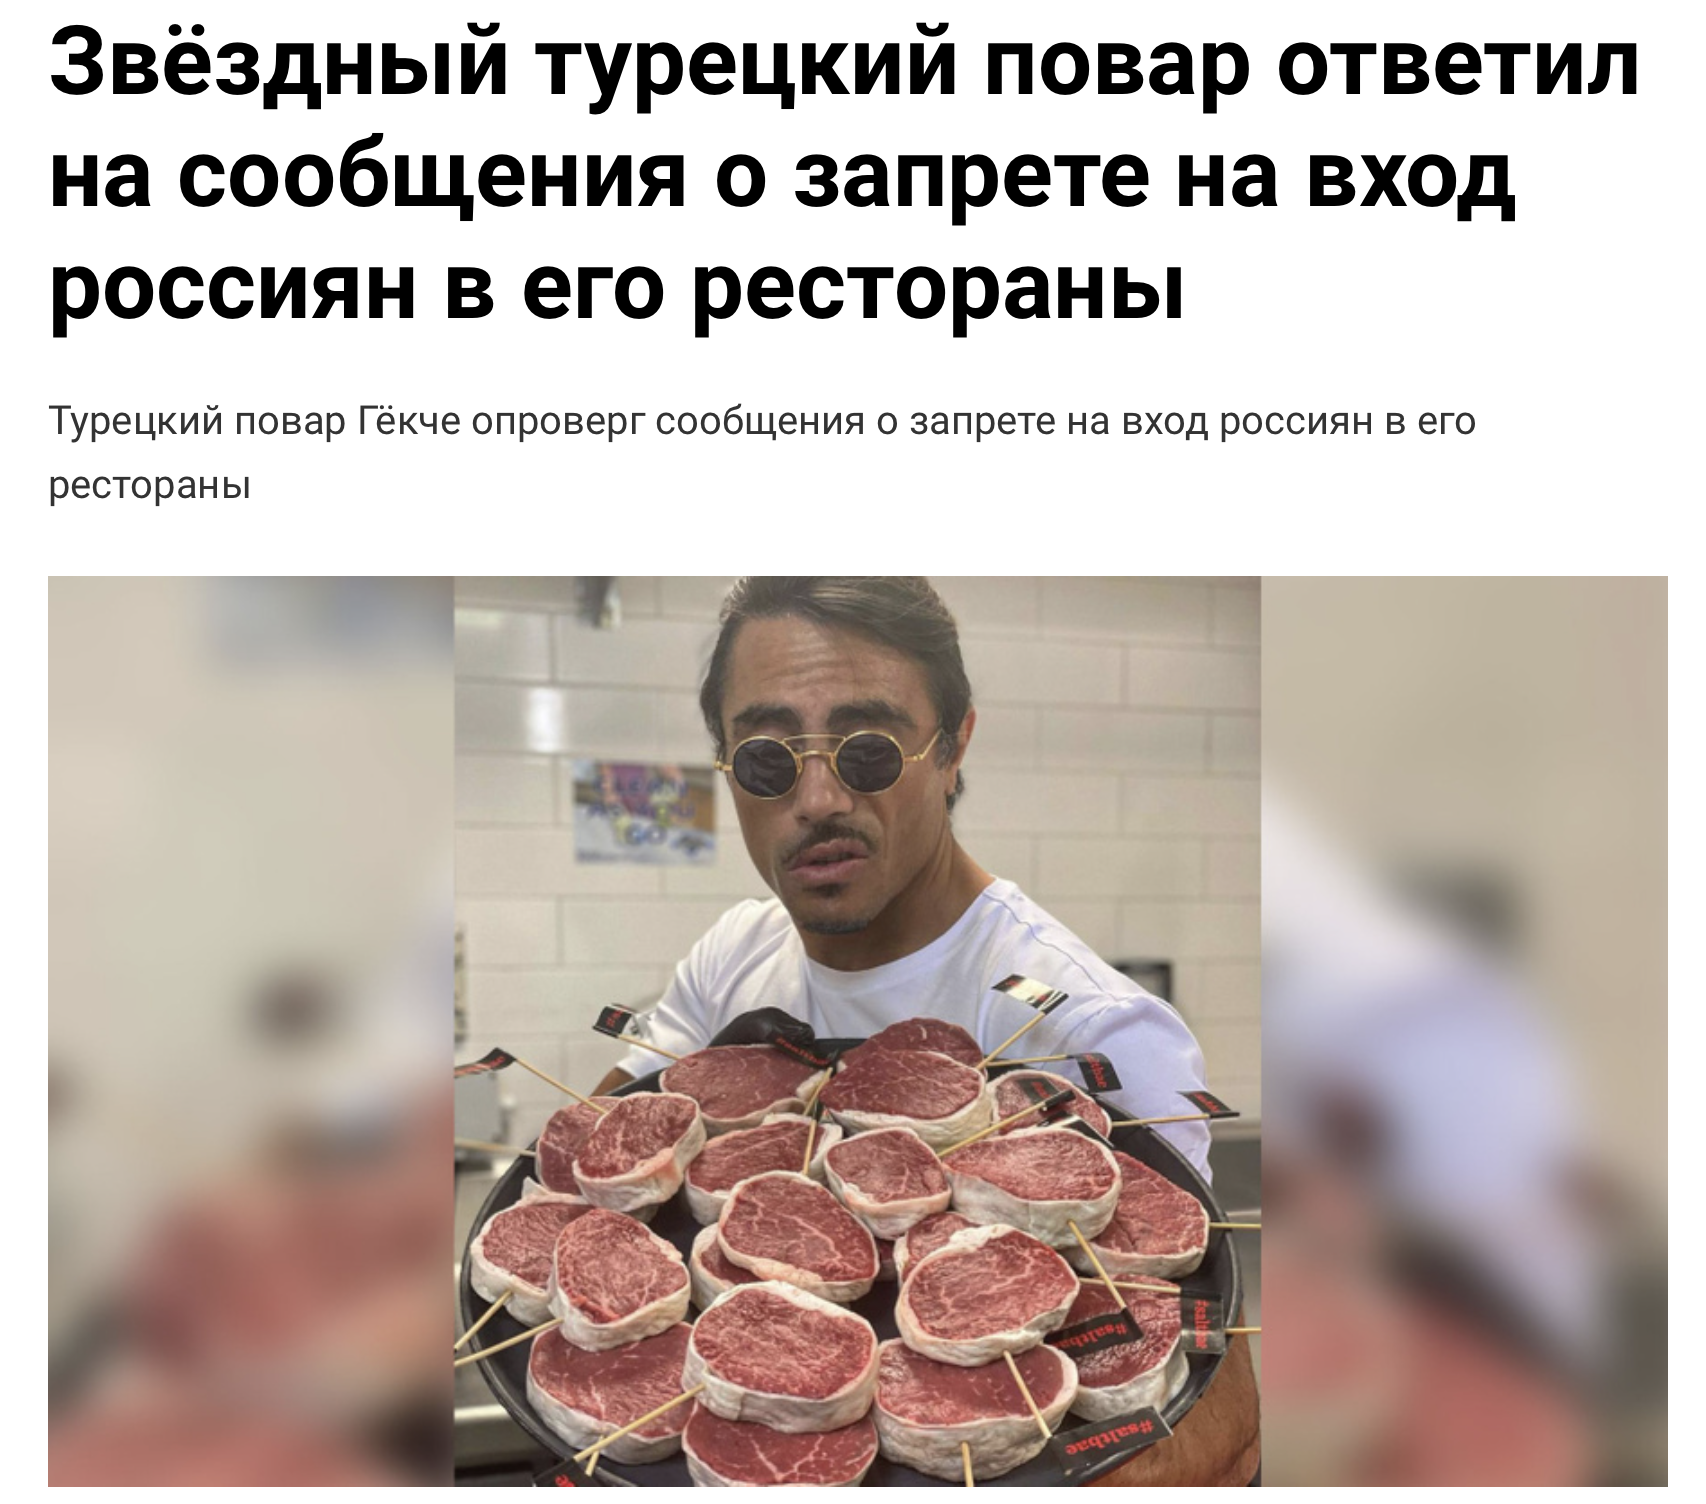 Турецкий повар Нусрет Гёкче не пускает россиян в свои рестораны